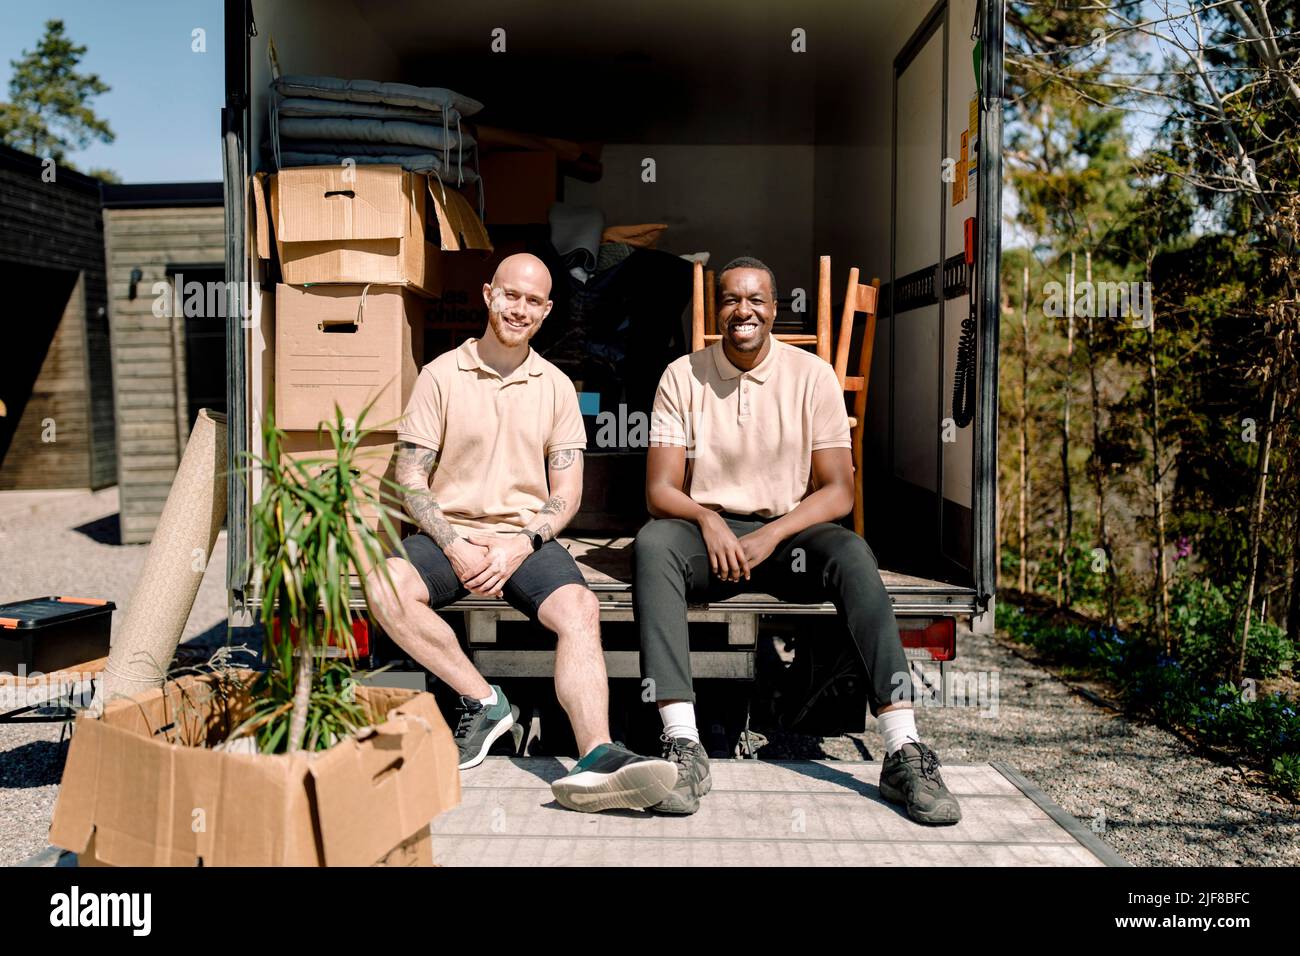 Les employés de l'entreprise de livraison sourient lorsqu'ils sont assis dans un camion par temps ensoleillé Banque D'Images